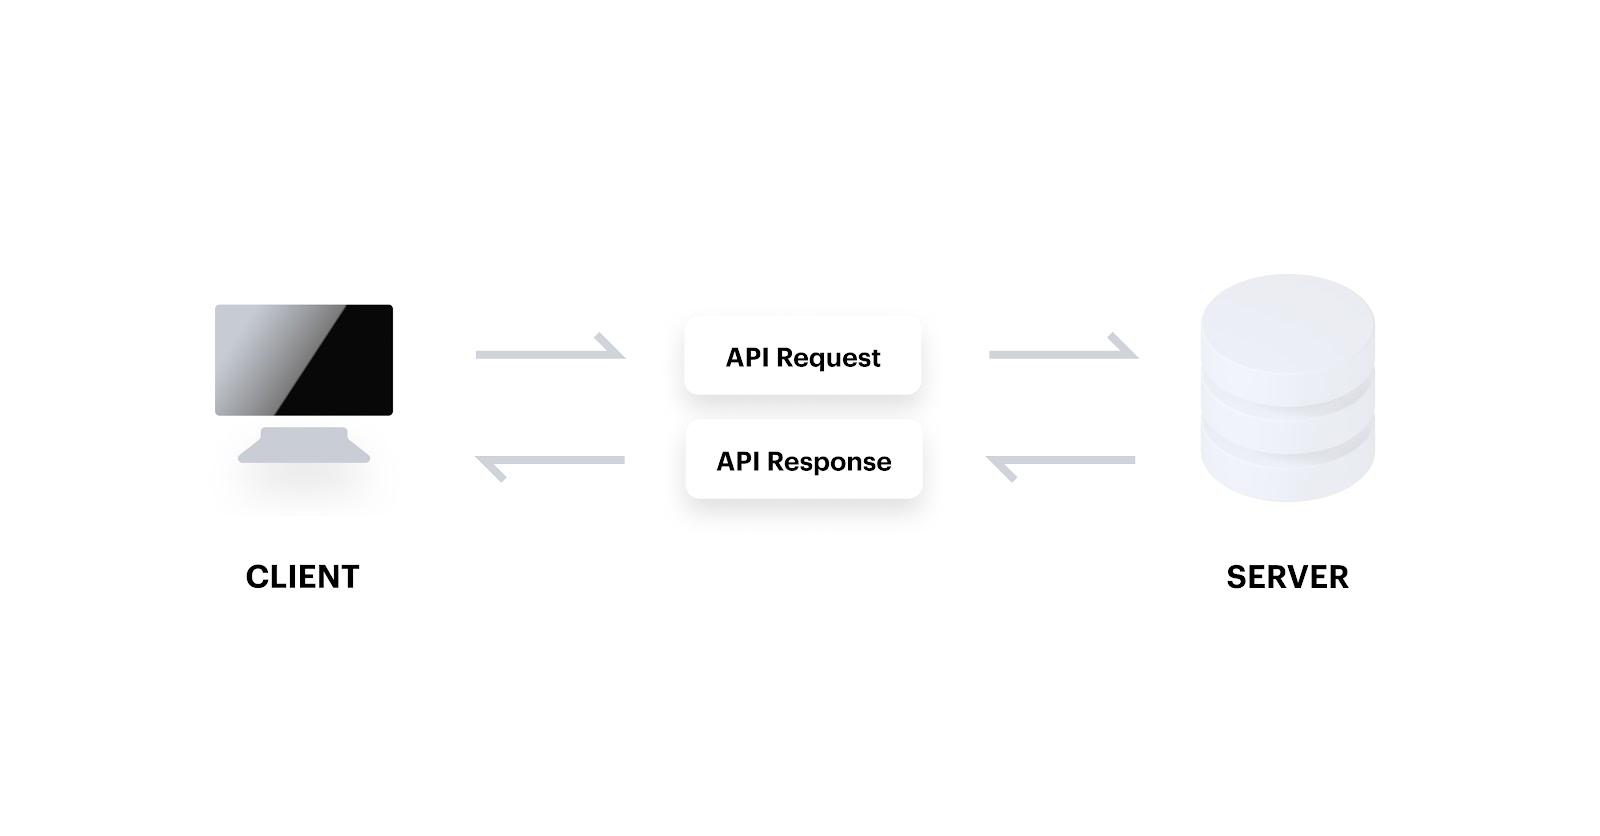 A visual breakdown of an API